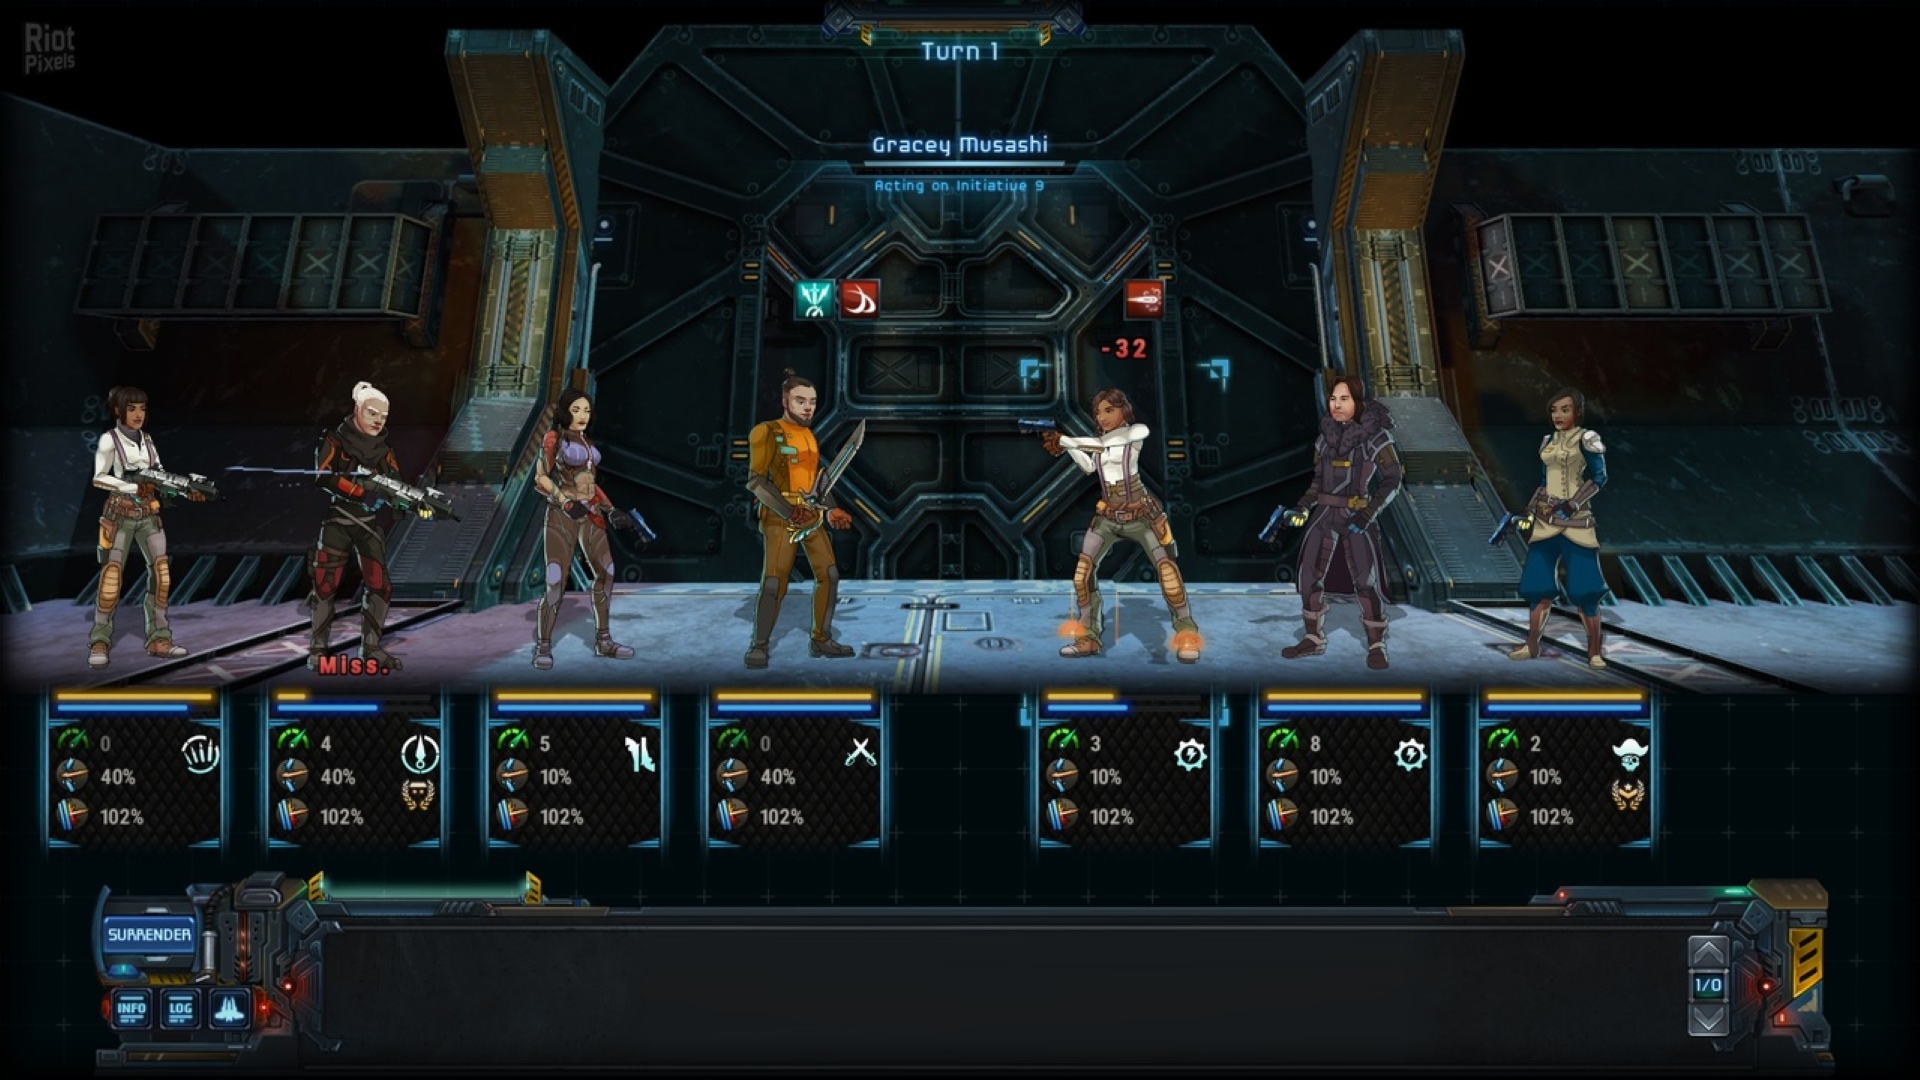 Trò chơi chiến lược di động tốt nhất: Thương nhân ngôi sao: Frontiers. Hình ảnh cho thấy một nhóm người đứng trong một tàu vũ trụ